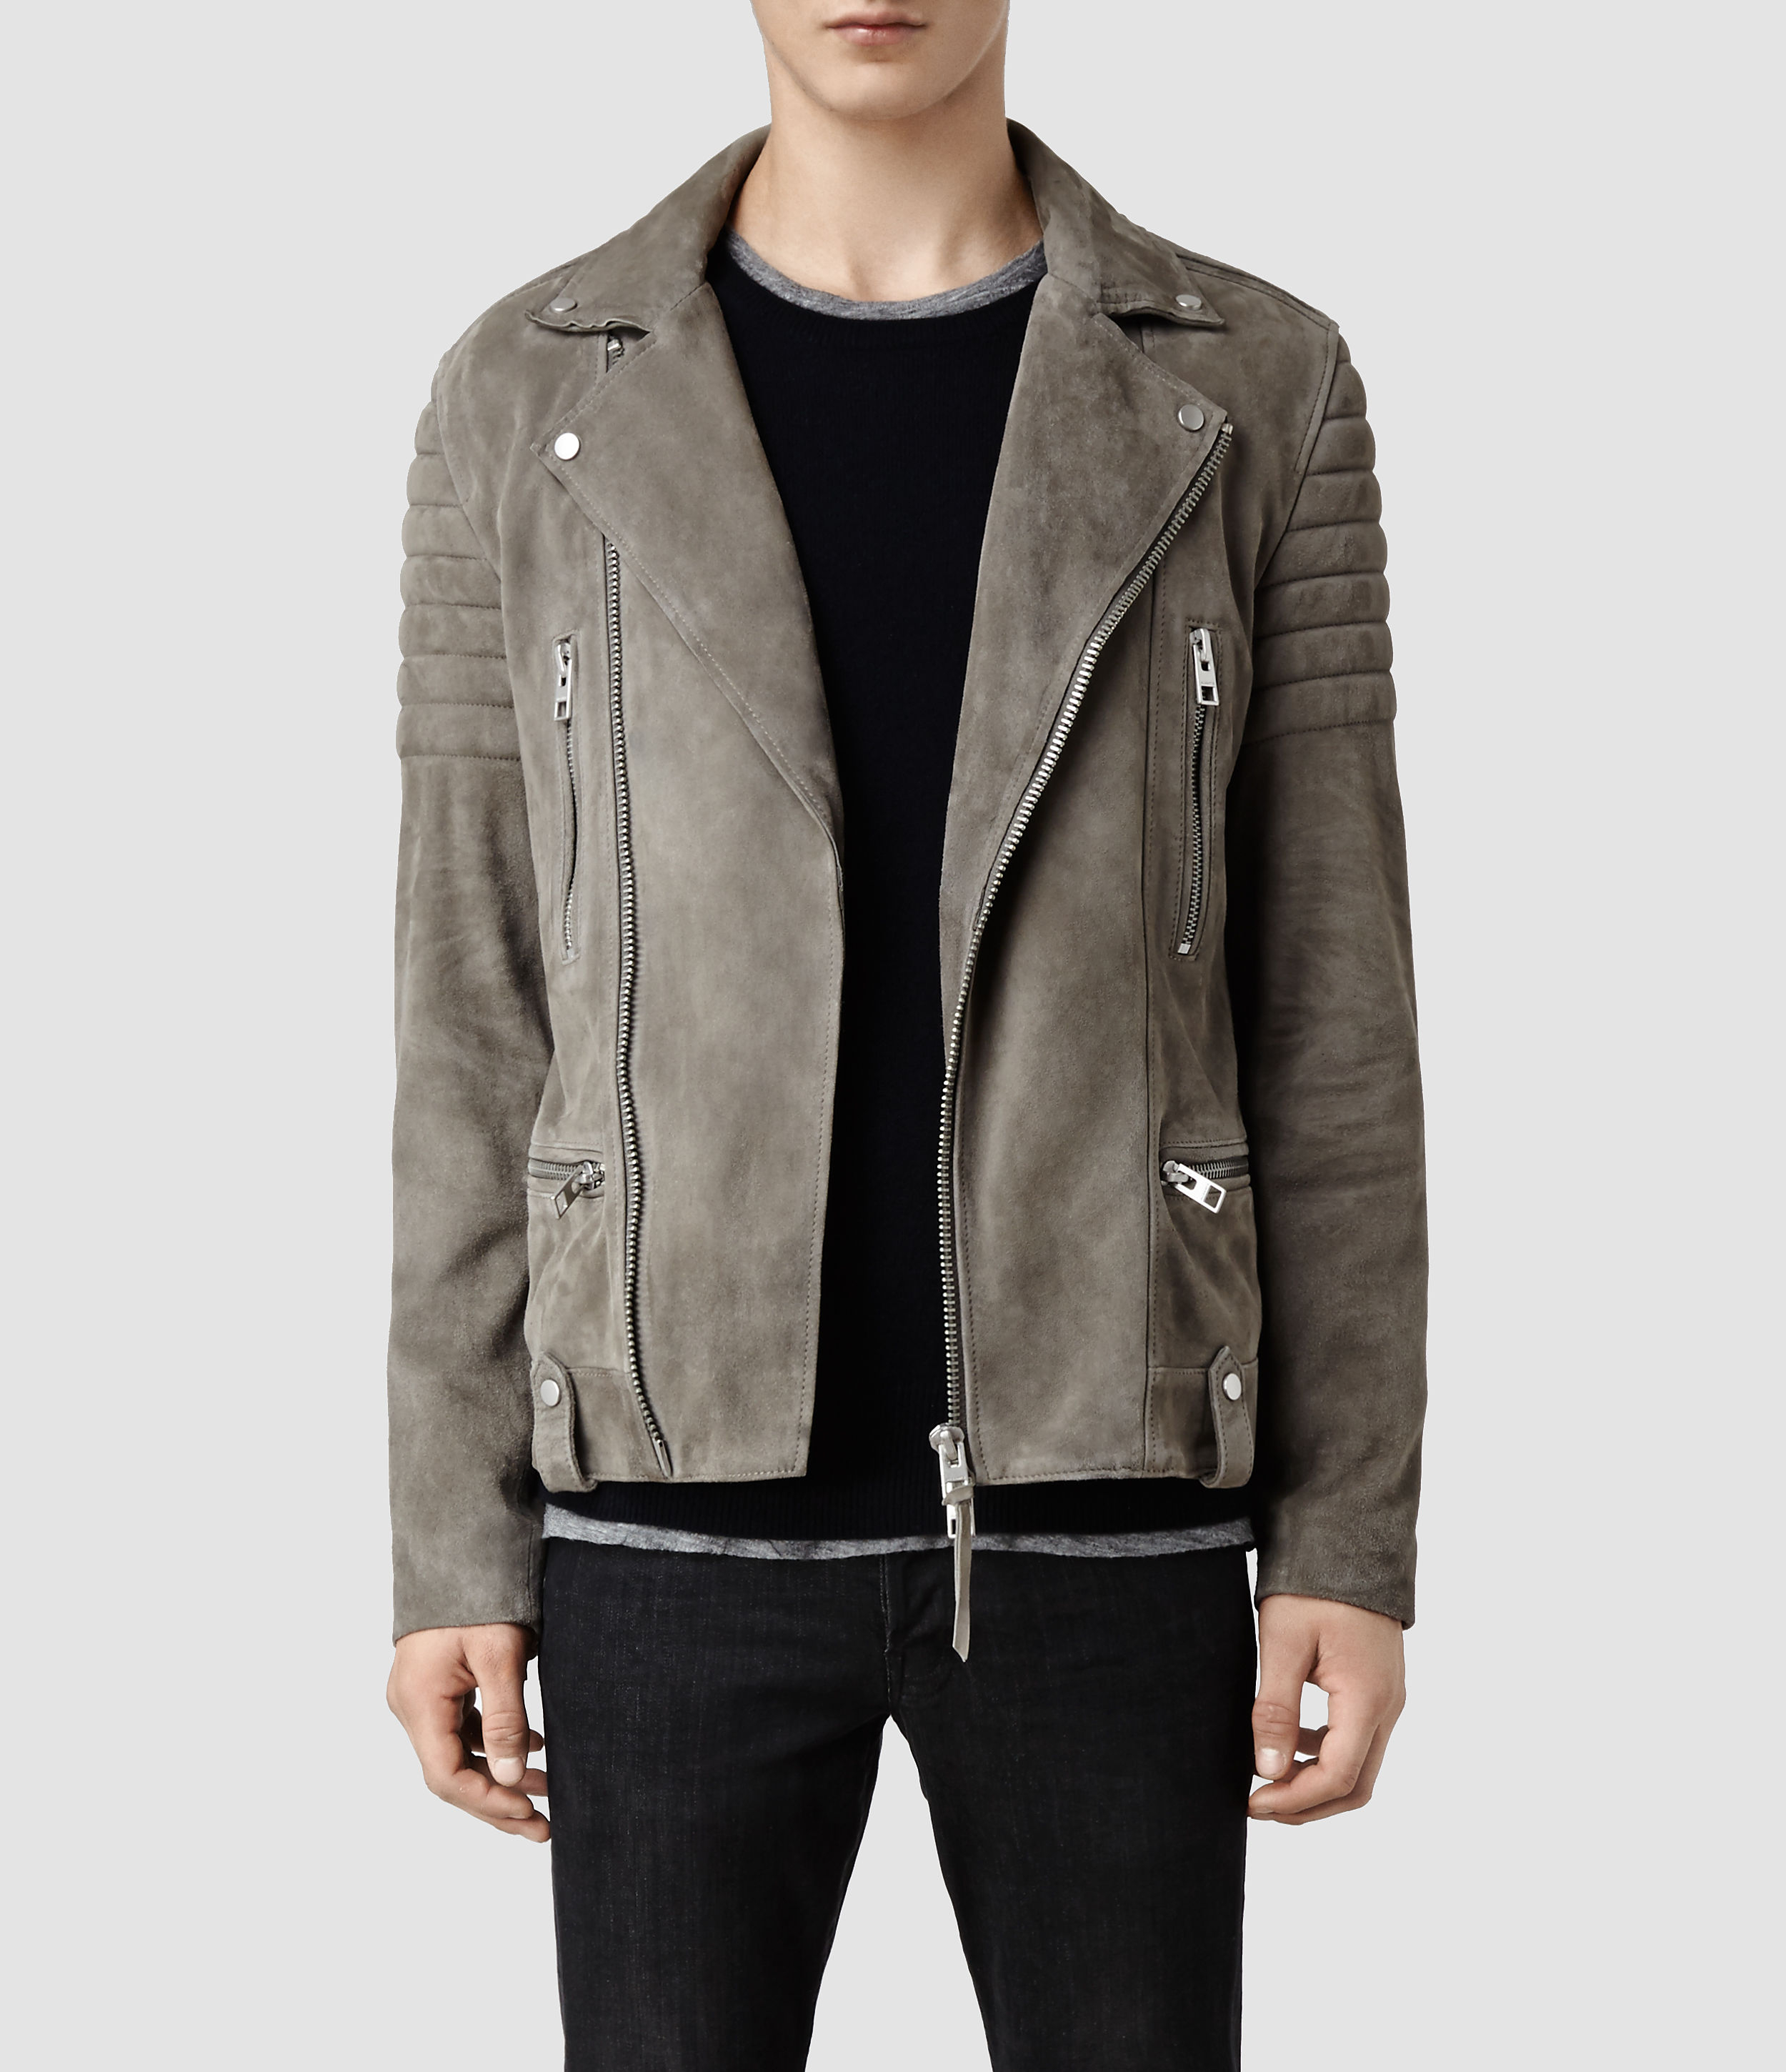 AllSaints Murphy Leather Biker Jacket in Gray for Men - Lyst